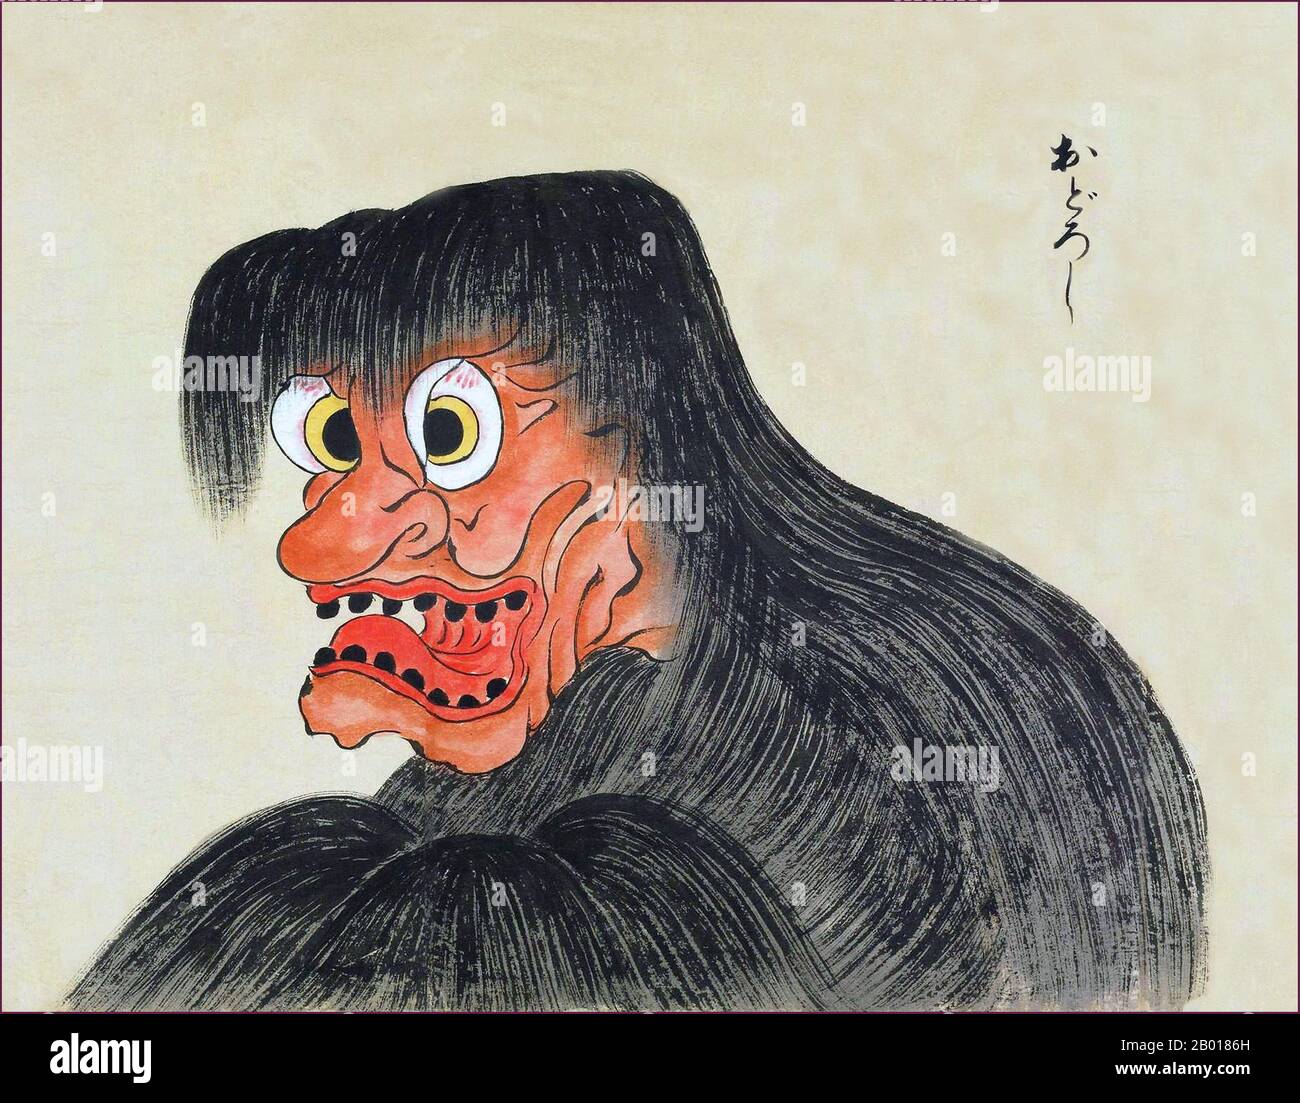 Giappone: L'Odoroshi è un mostro rosso con occhi grandi, denti neri e capelli lunghi. Dal Bakemono Zukushi Monster Scroll, periodo Edo (1603-1868), 18th-19th secolo. Il rotolo di Bakemono Zukushi, dipinto nel periodo Edo (18th-19th secolo) da un artista sconosciuto, raffigura 24 mostri tradizionali che tradizionalmente infestano persone e località in Giappone. Foto Stock